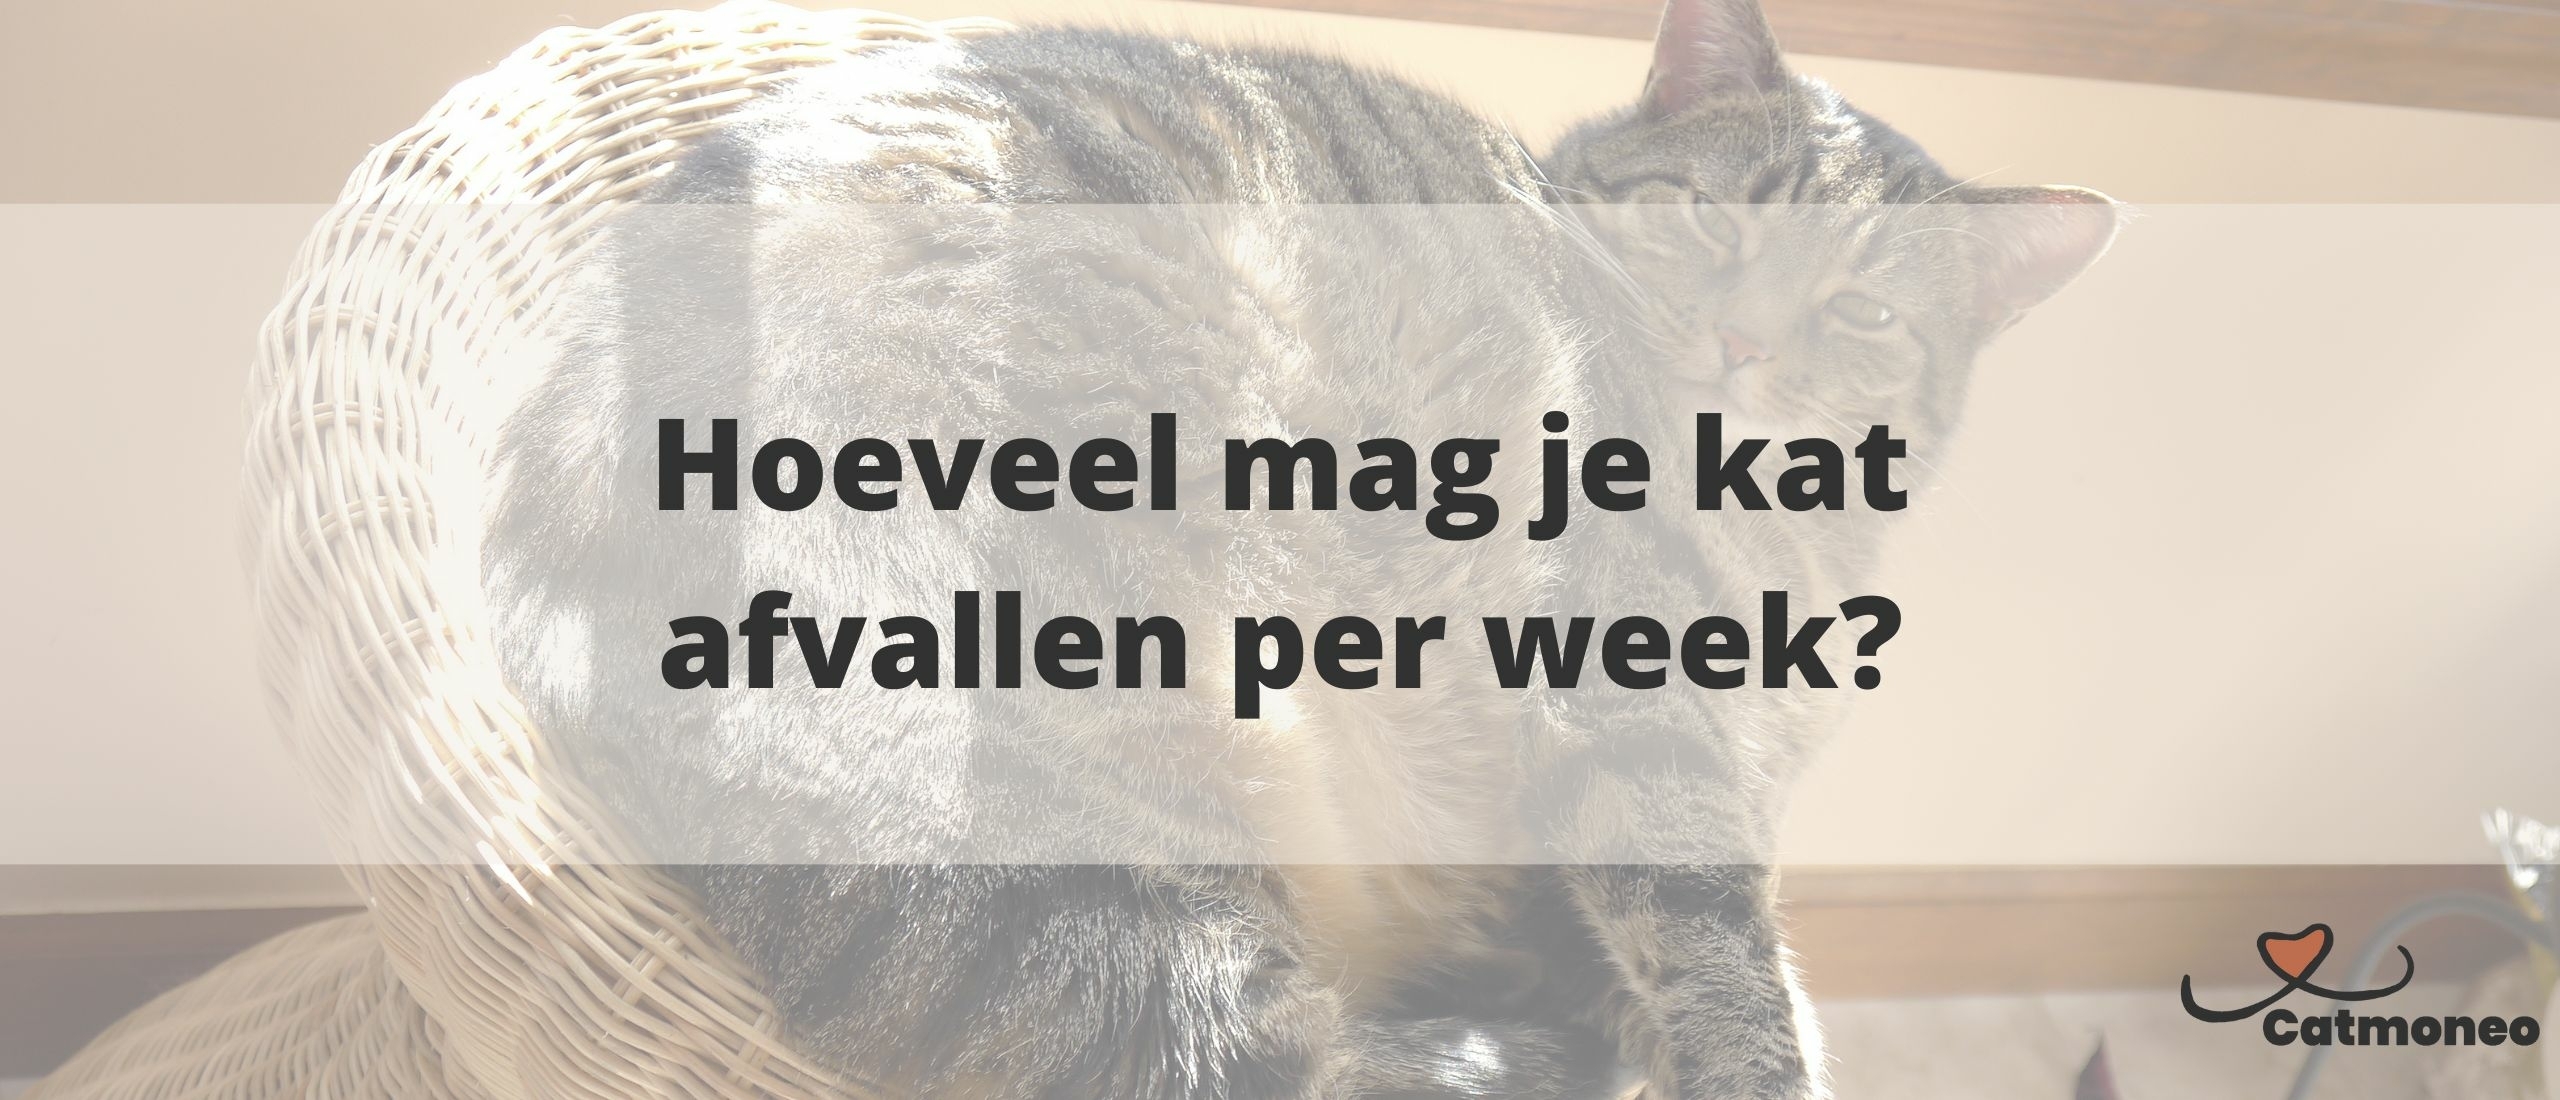 Hoeveel mag een kat per week afvallen?